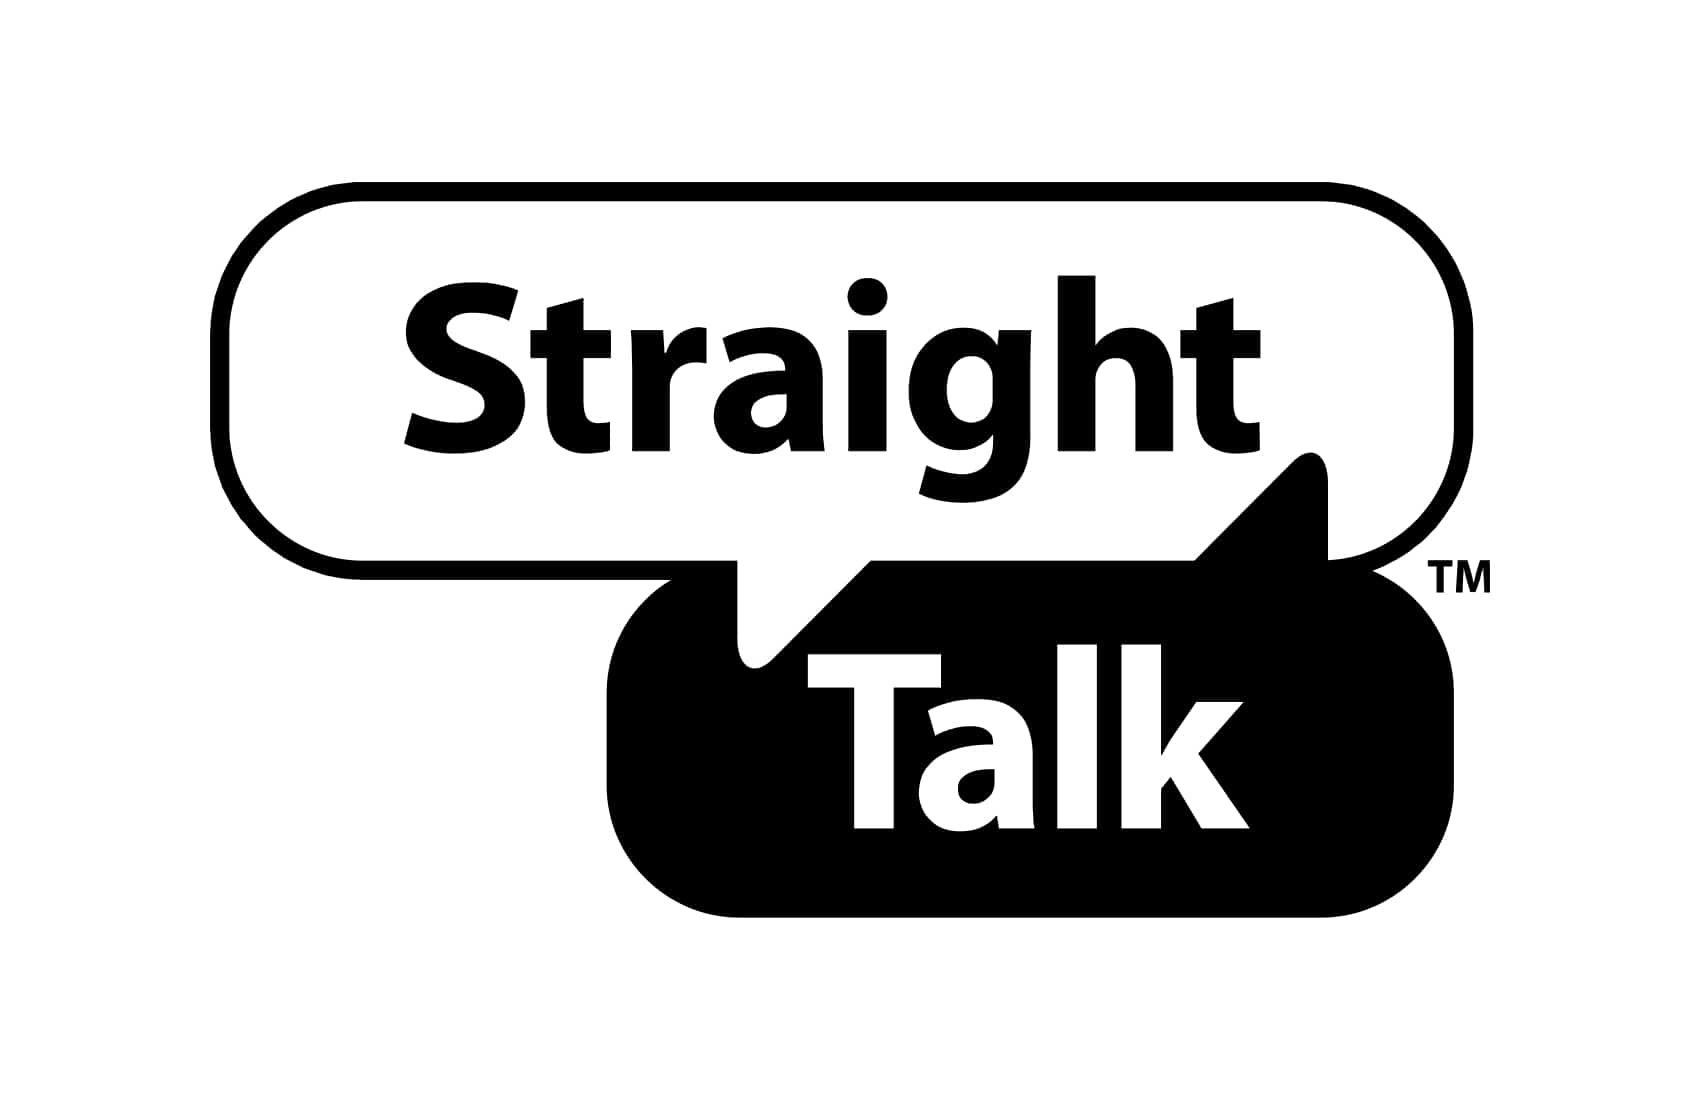 ผู้ใช้ StraightTalk บางคนถูกกล่าวหาว่าทำหมายเลขโทรศัพท์หาย TH Atsit